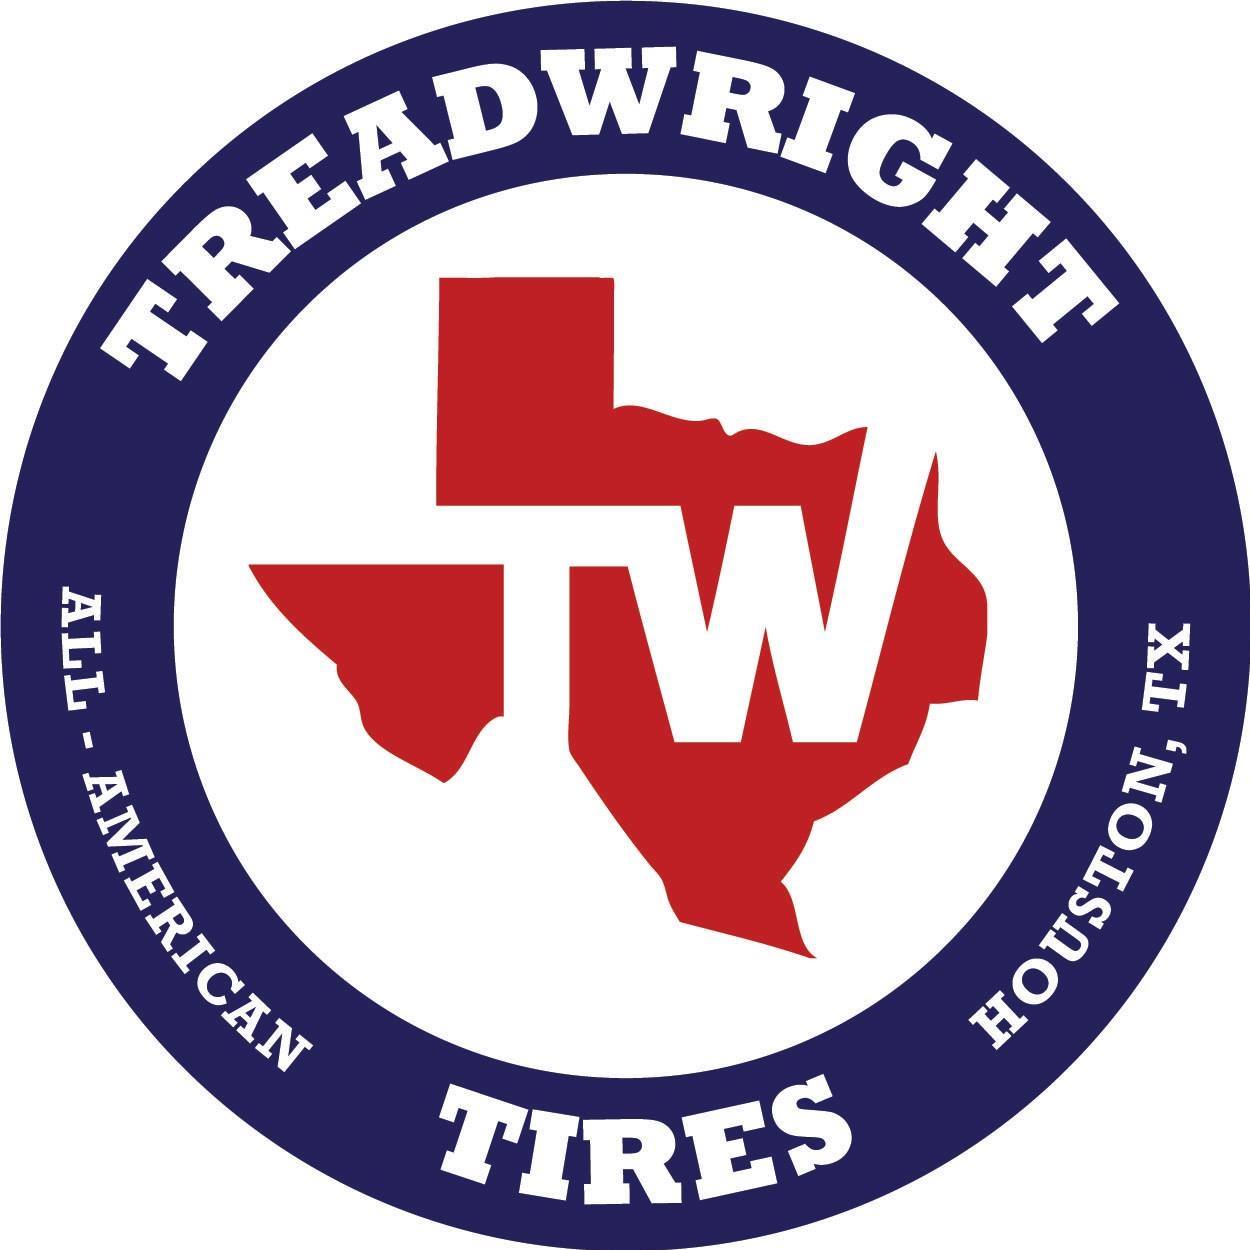 Company logo of Treadwright Tires